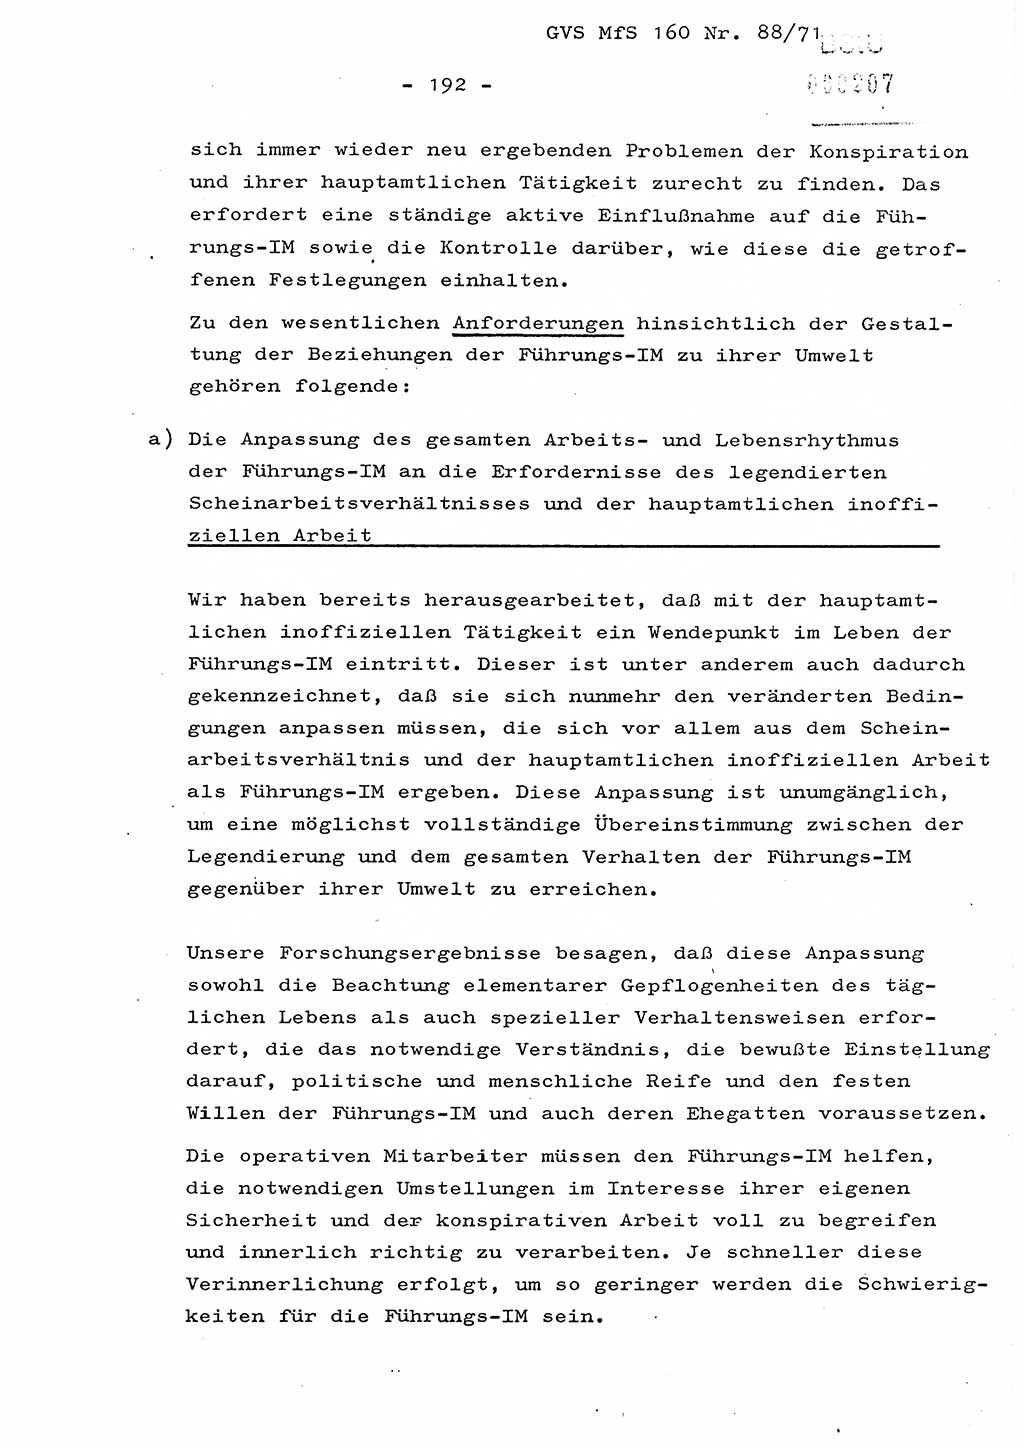 Dissertation Oberstleutnant Josef Schwarz (BV Schwerin), Major Fritz Amm (JHS), Hauptmann Peter Gräßler (JHS), Ministerium für Staatssicherheit (MfS) [Deutsche Demokratische Republik (DDR)], Juristische Hochschule (JHS), Geheime Verschlußsache (GVS) 160-88/71, Potsdam 1972, Seite 192 (Diss. MfS DDR JHS GVS 160-88/71 1972, S. 192)